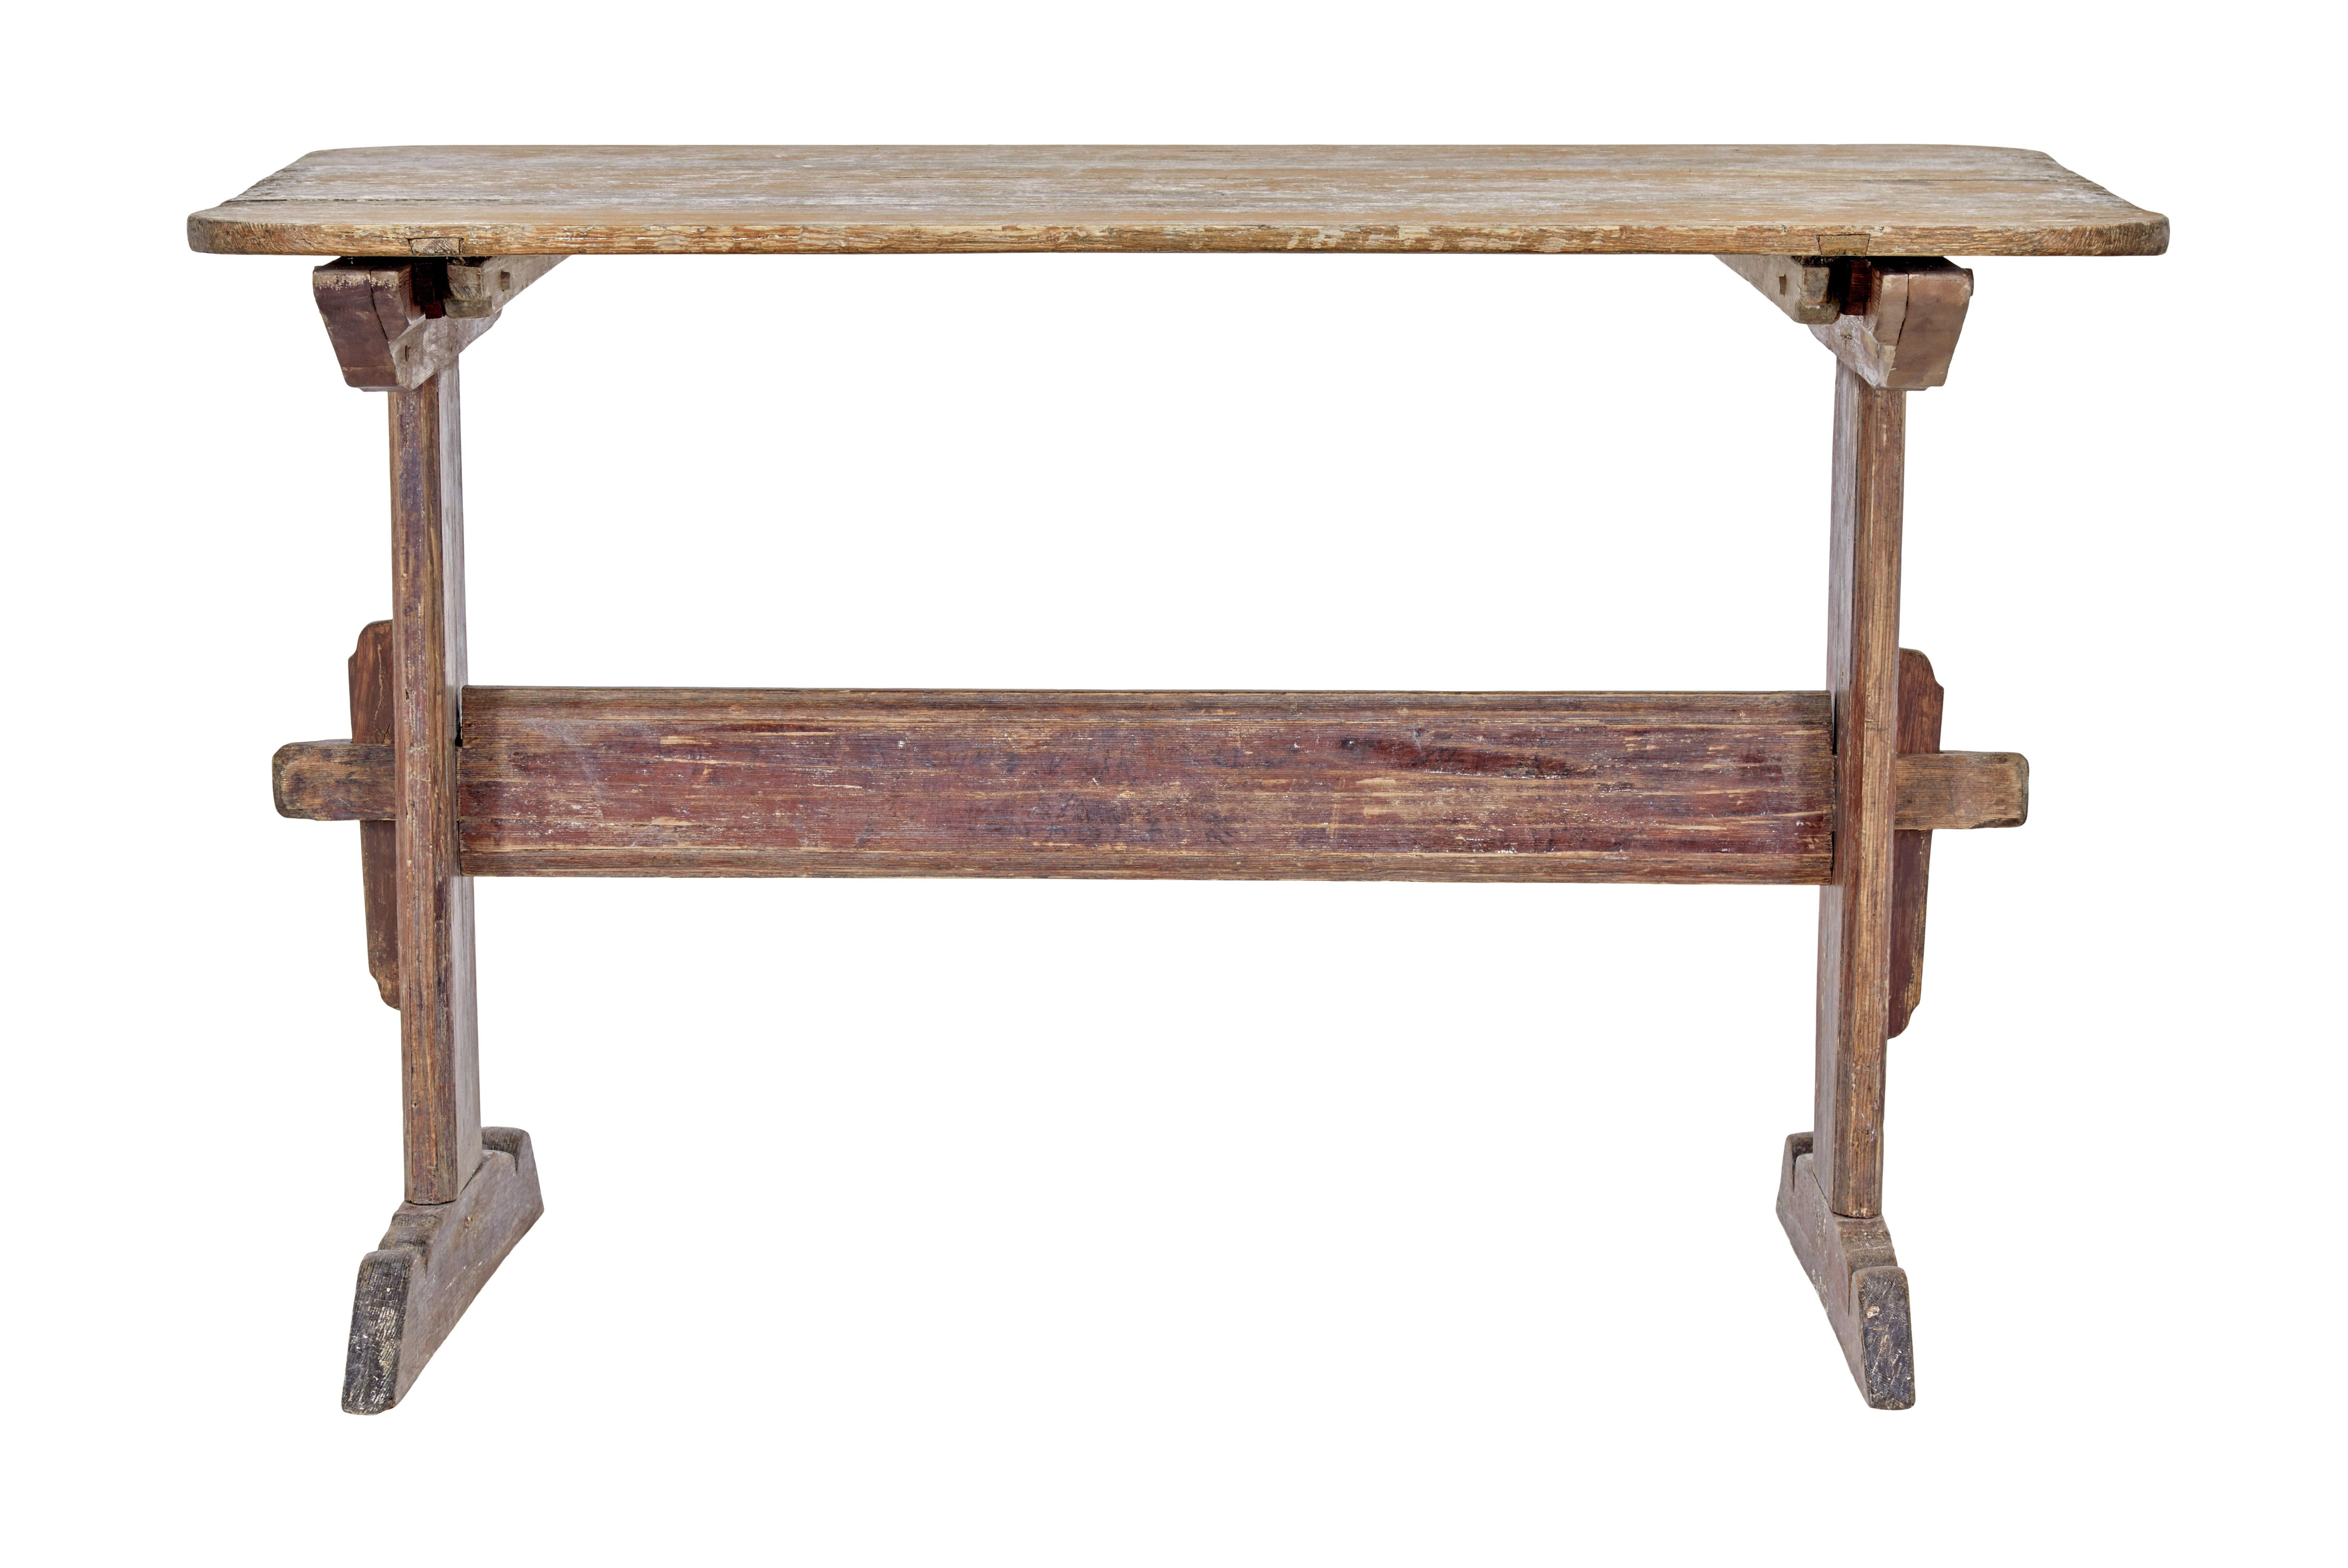 19. Jahrhundert rustikaler schwedischer Tisch mit bemalten Böcken um 1840.

Hier haben wir einen traditionellen schwedischen Tisch mit Spuren der Originalfarbe.

Hellorange bemalte Platte mit Anzeichen, dass sie zum Backen benutzt worden sein